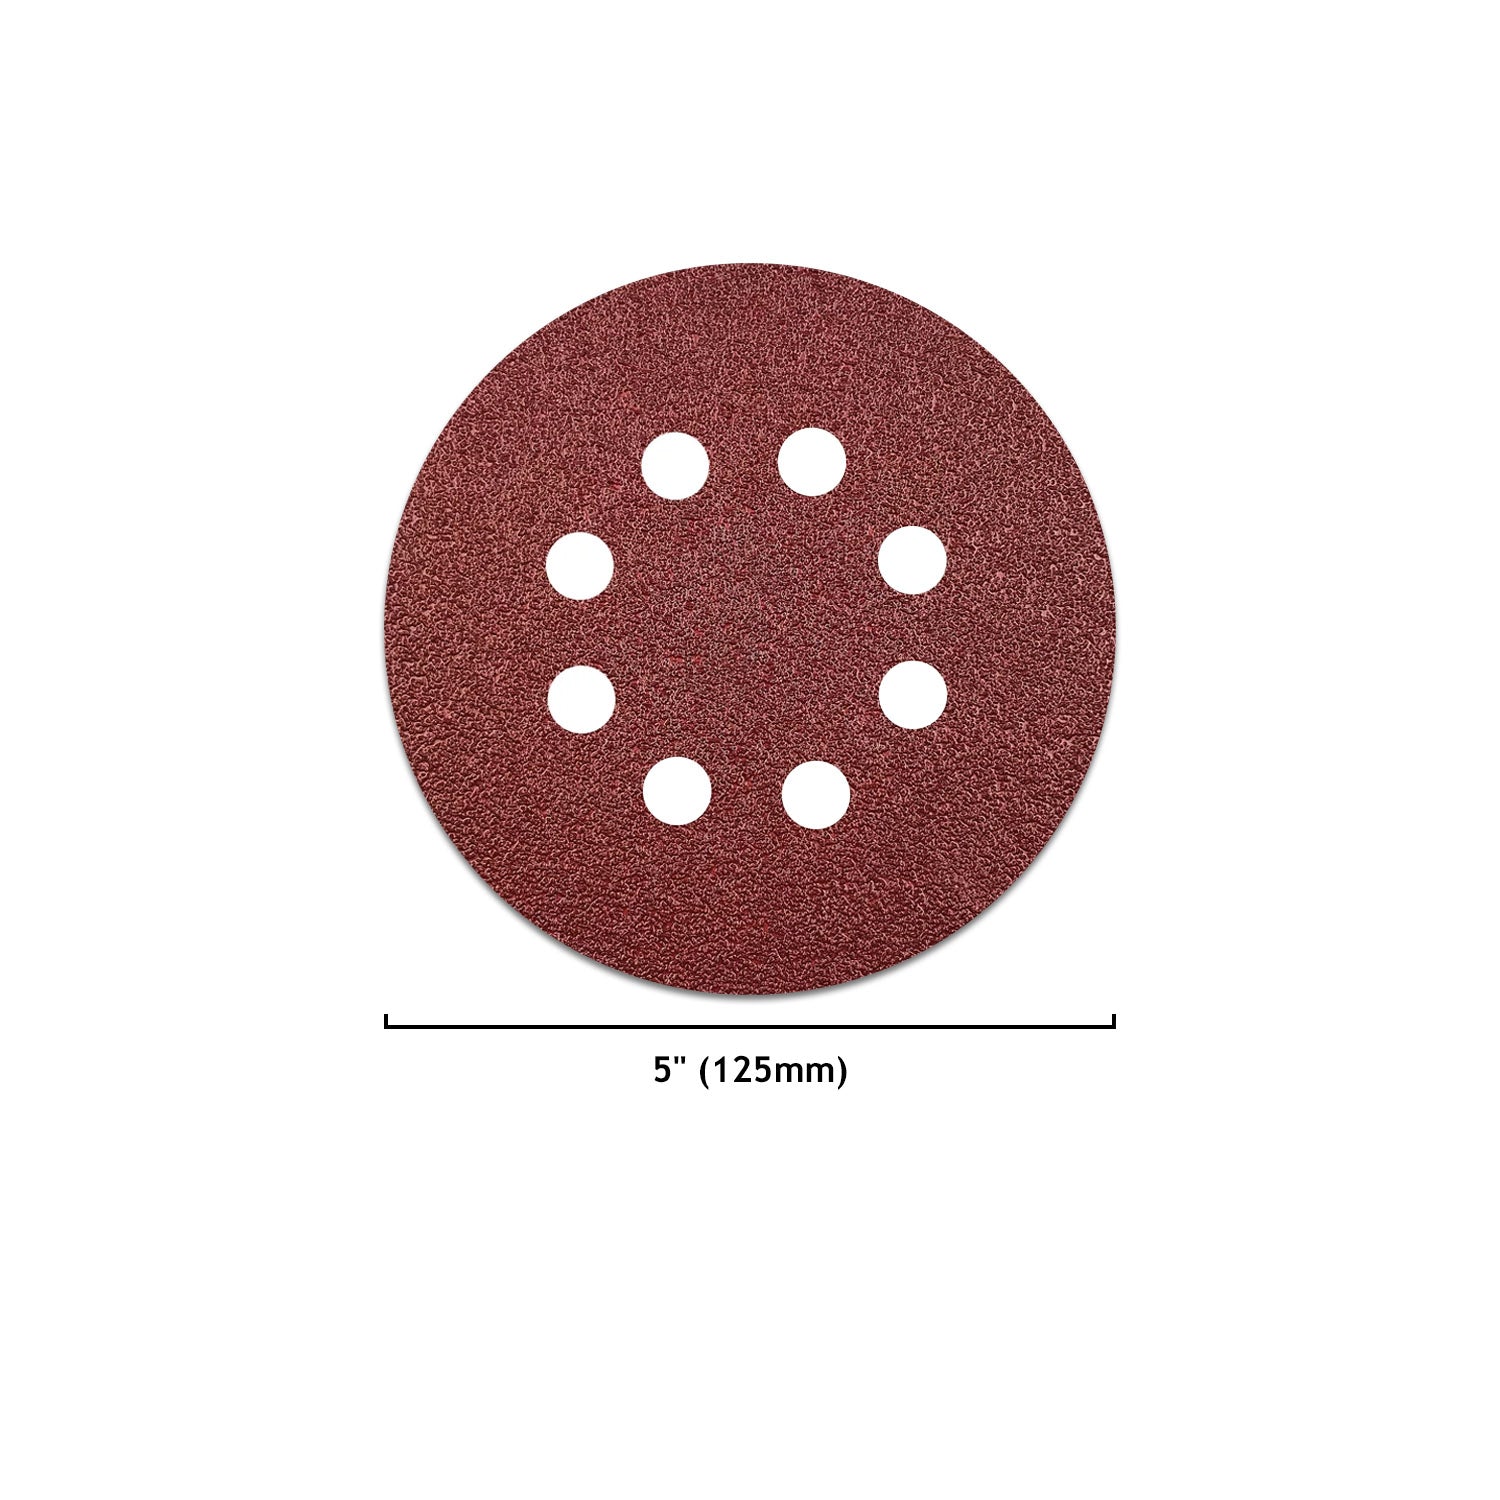 5" (125mm) 8-Hole Red Grain Hook & Loop Sanding Discs (40-2000 Grit), 1 Disc